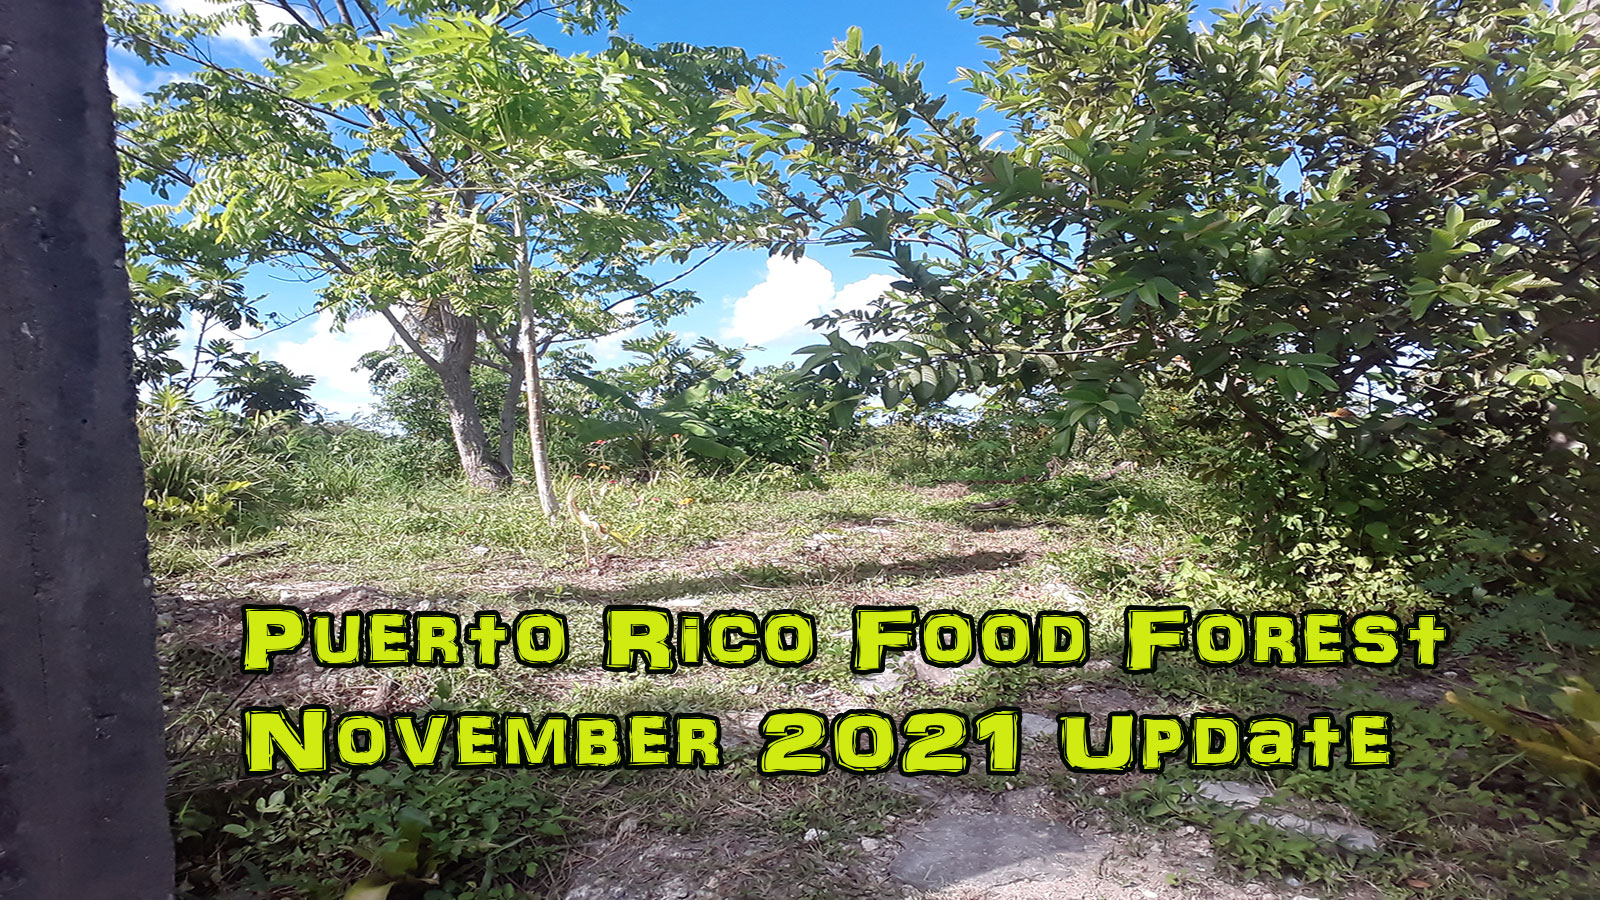 November food forest update